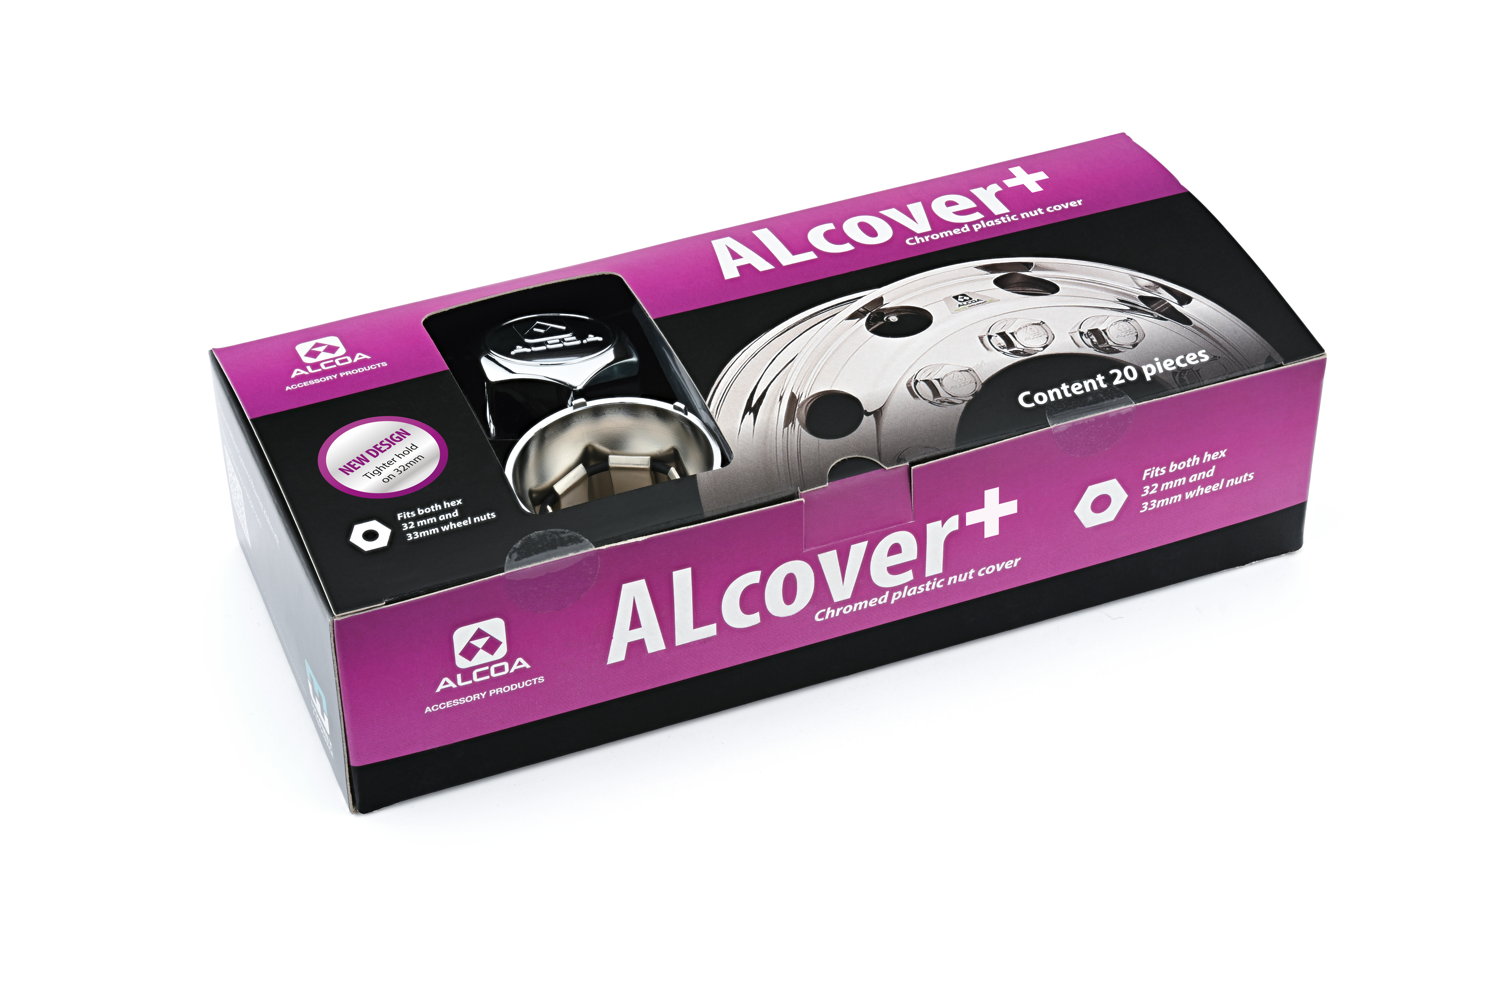 Alcover+_box_2